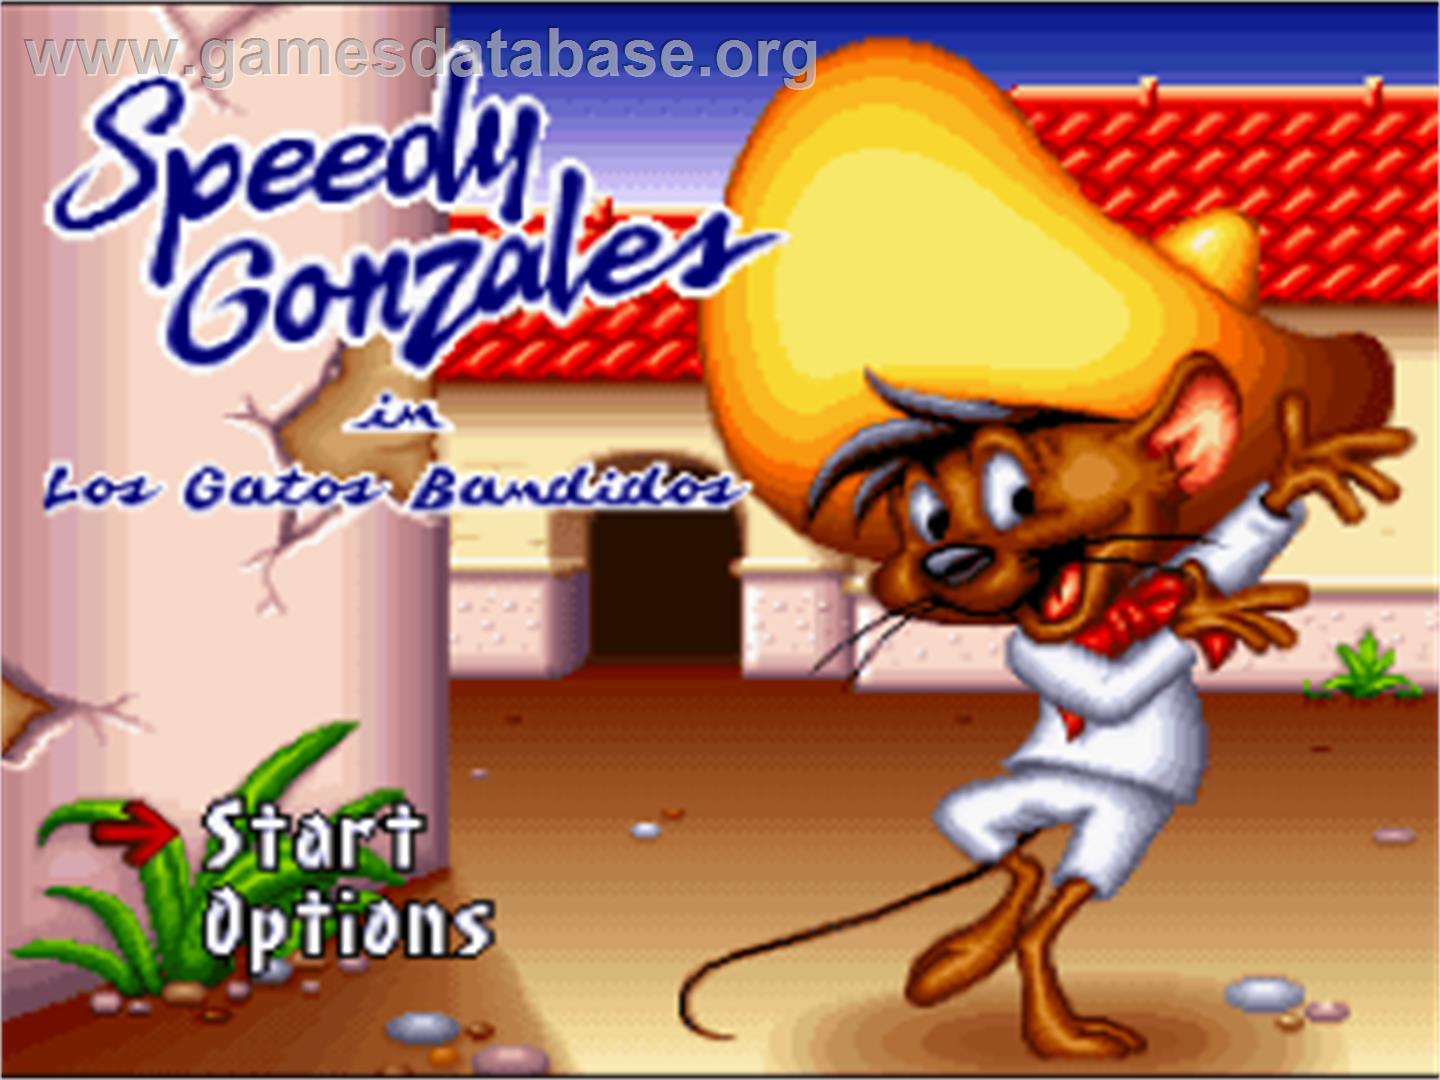 Speedy Gonzales in Los Gatos Bandidos - Nintendo SNES - Artwork - Title Screen